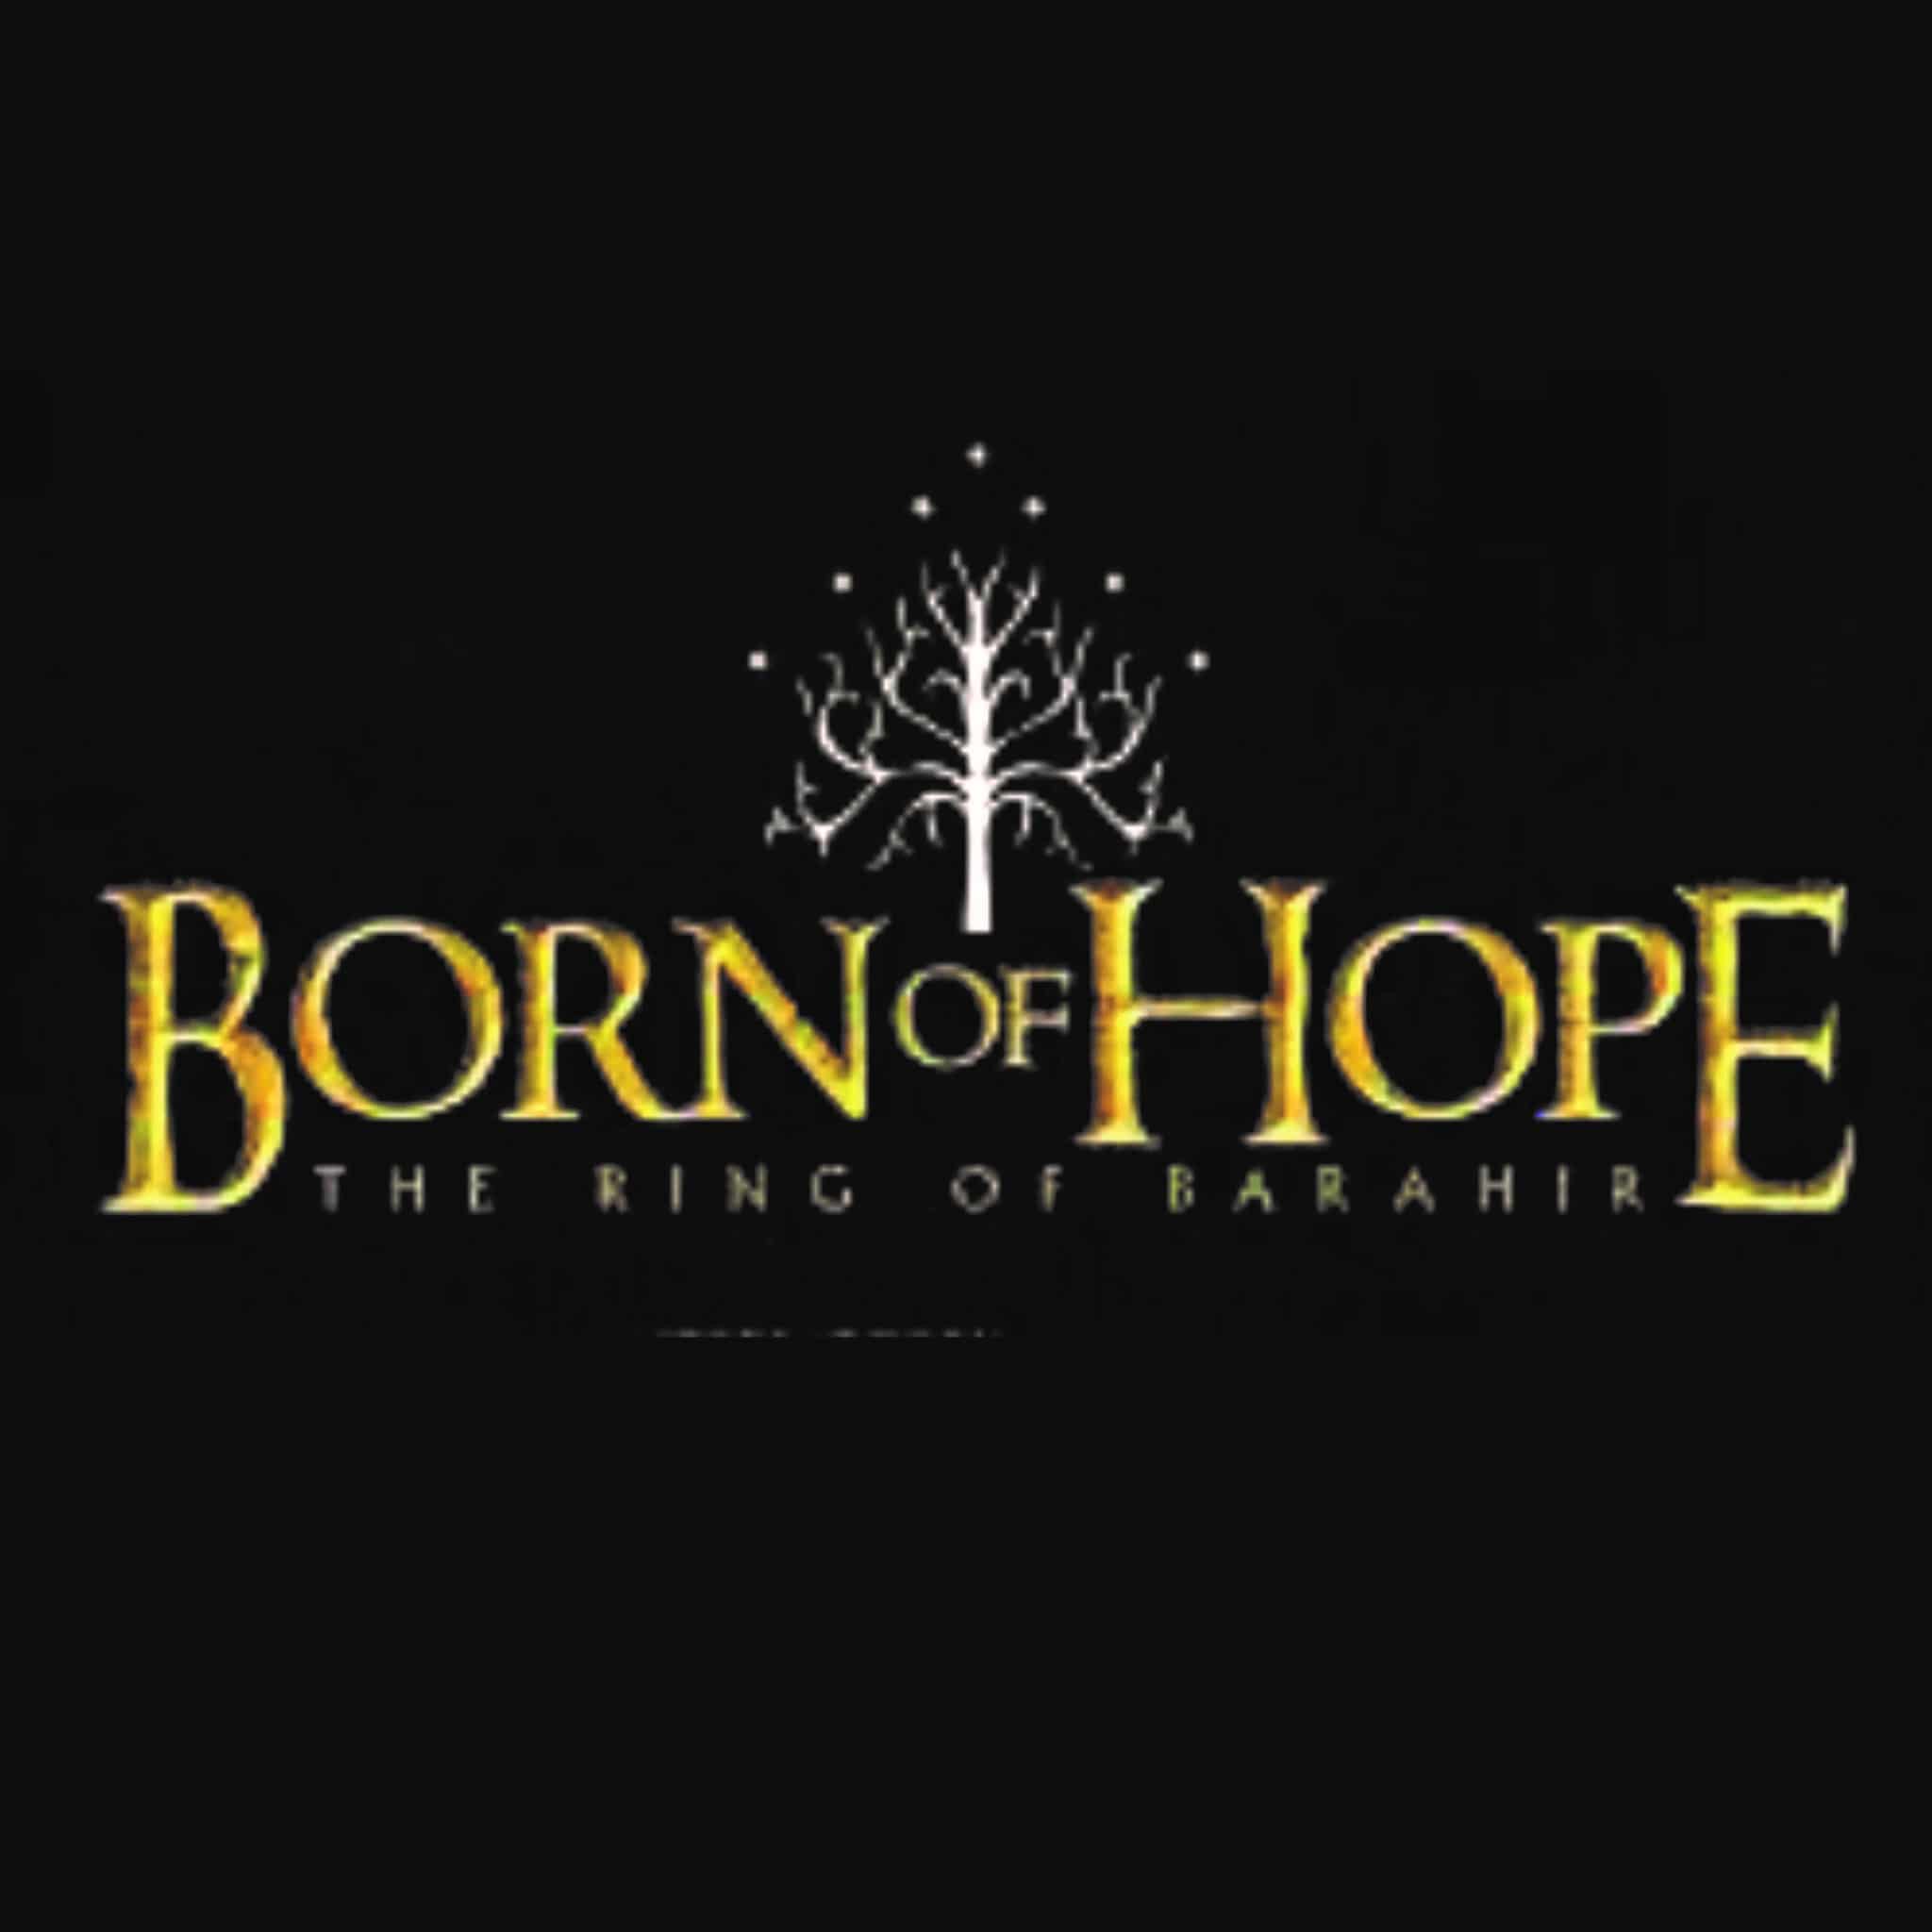 Le titre "Born of Hope" est écrit en jaune sur un fond noir.